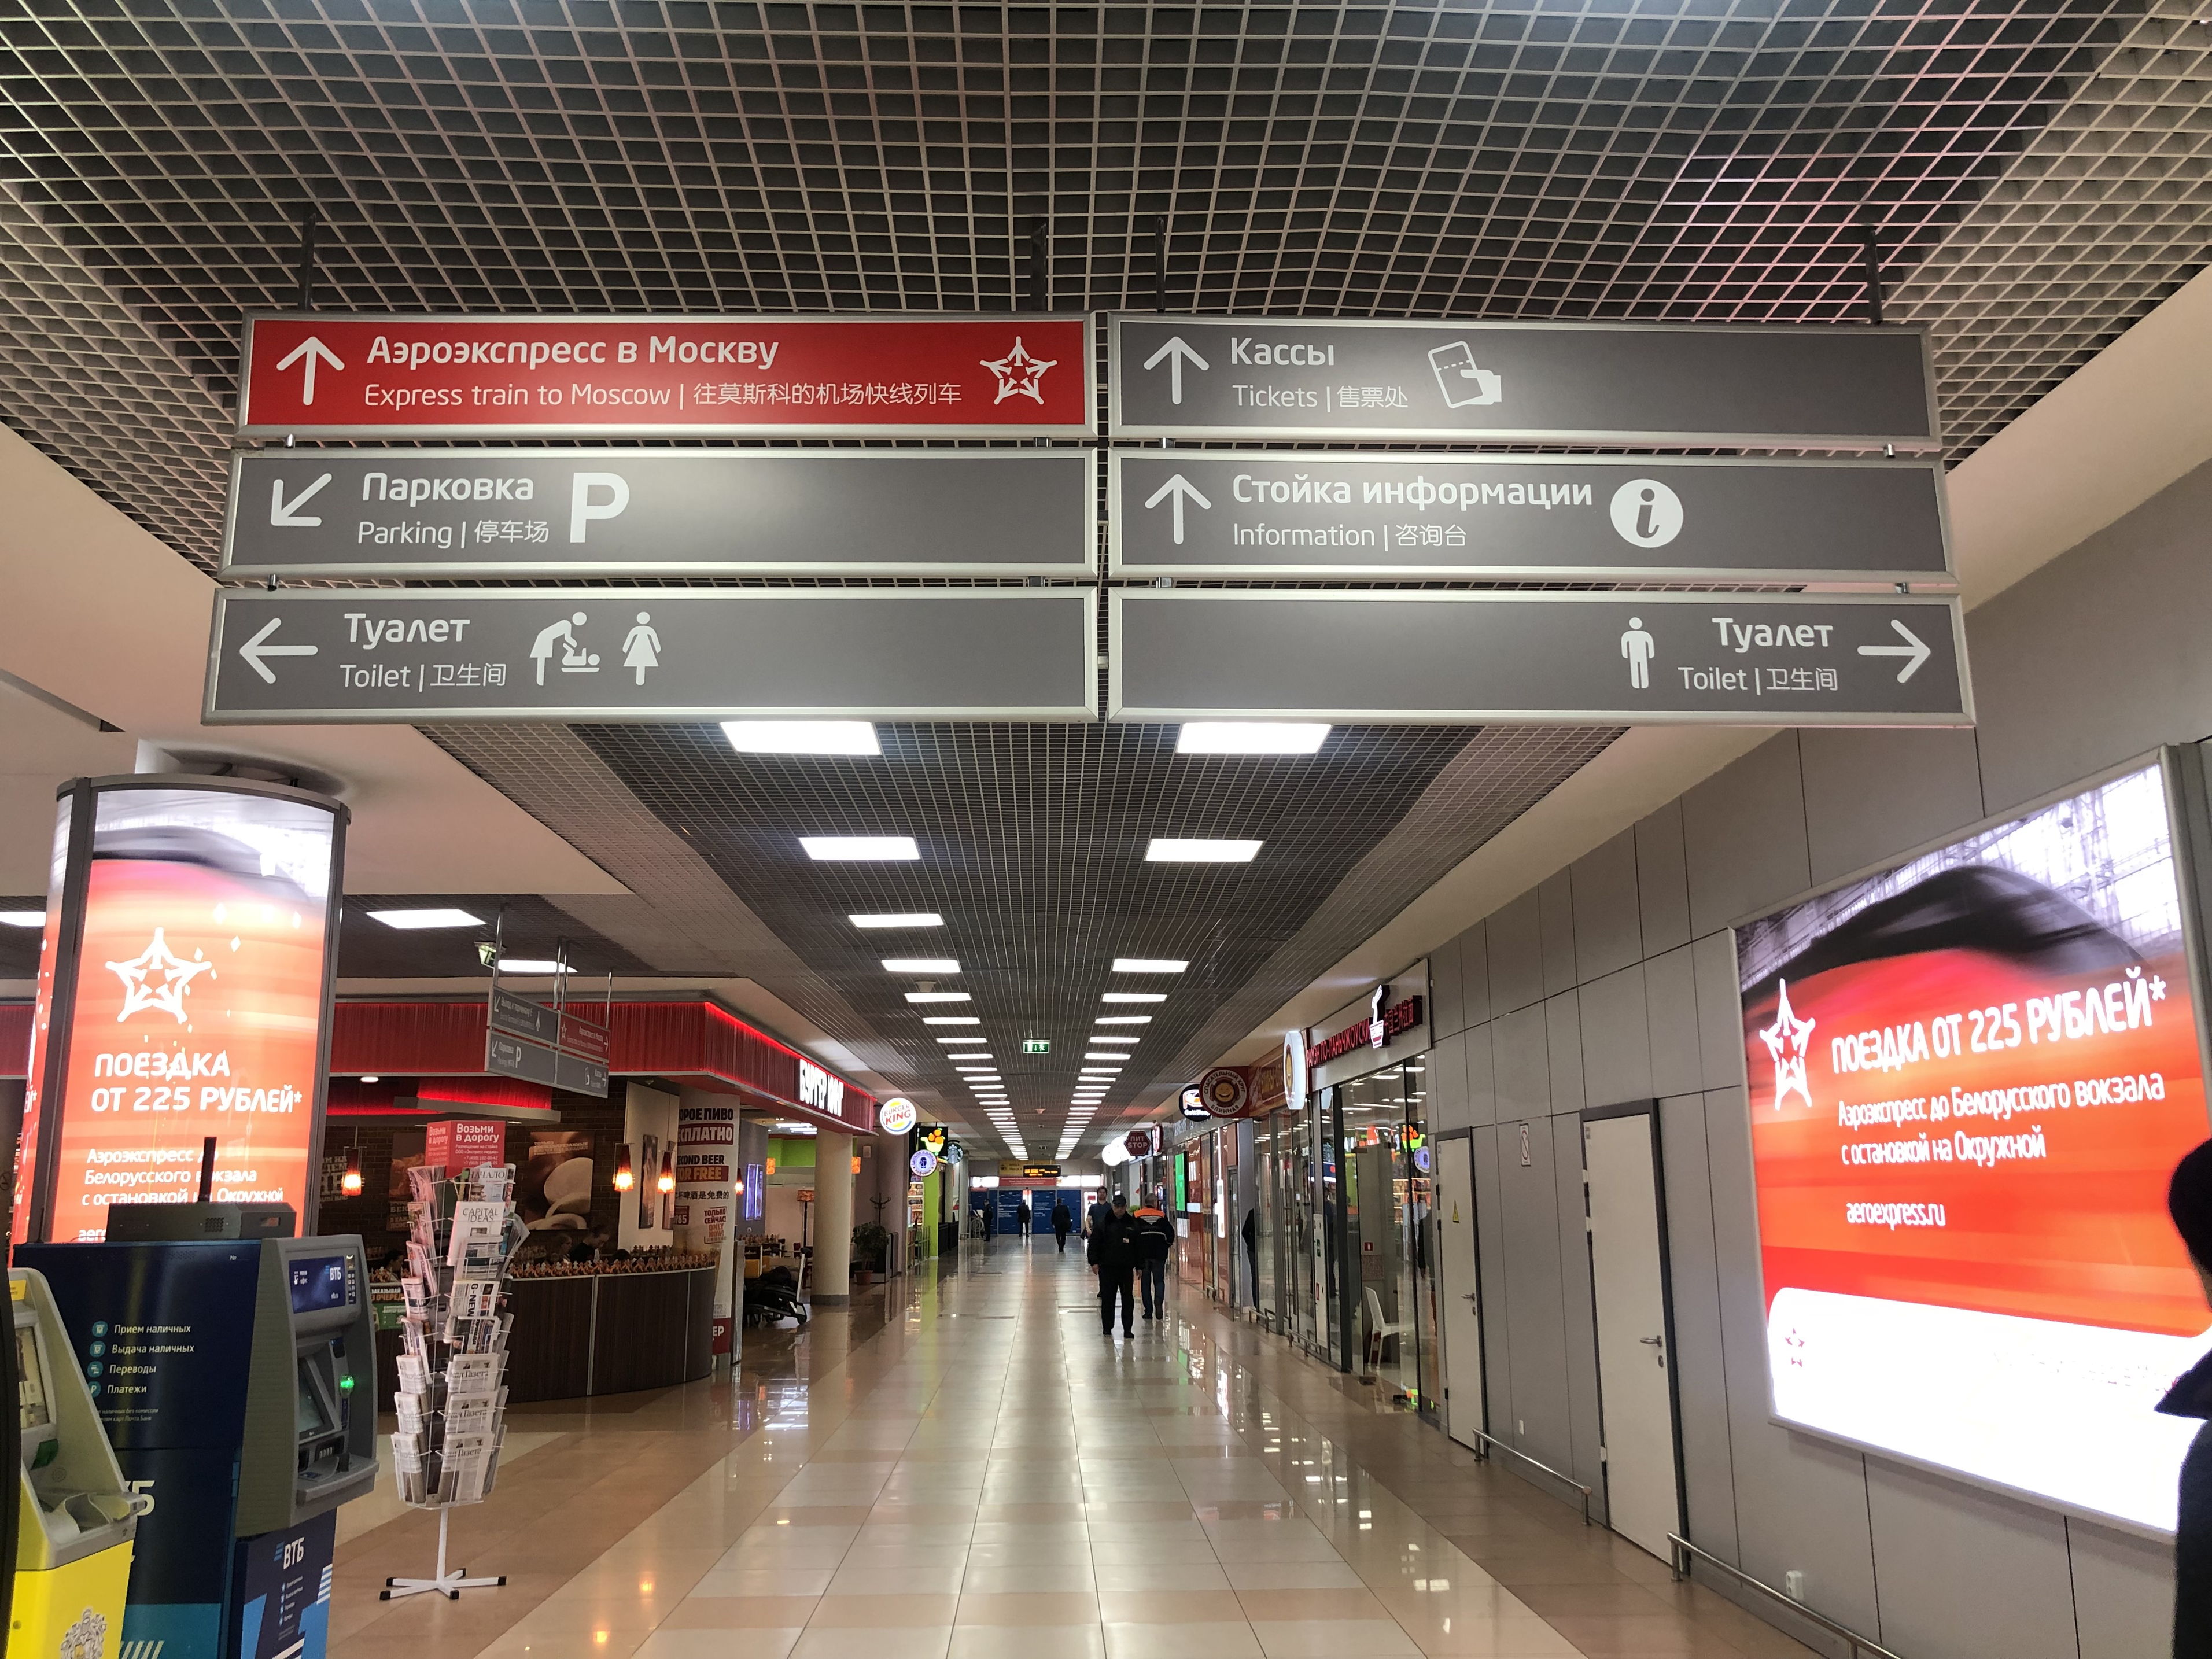 Москва шереметьево аэроэкспресс терминал в. Аэроэкспресс Шереметьево терминал в. Аэропорт Шереметьево, терминал аэроэкспресса. Указатели в аэропорту Шереметьево. Аэропорт Шереметьево терминал в внутри.